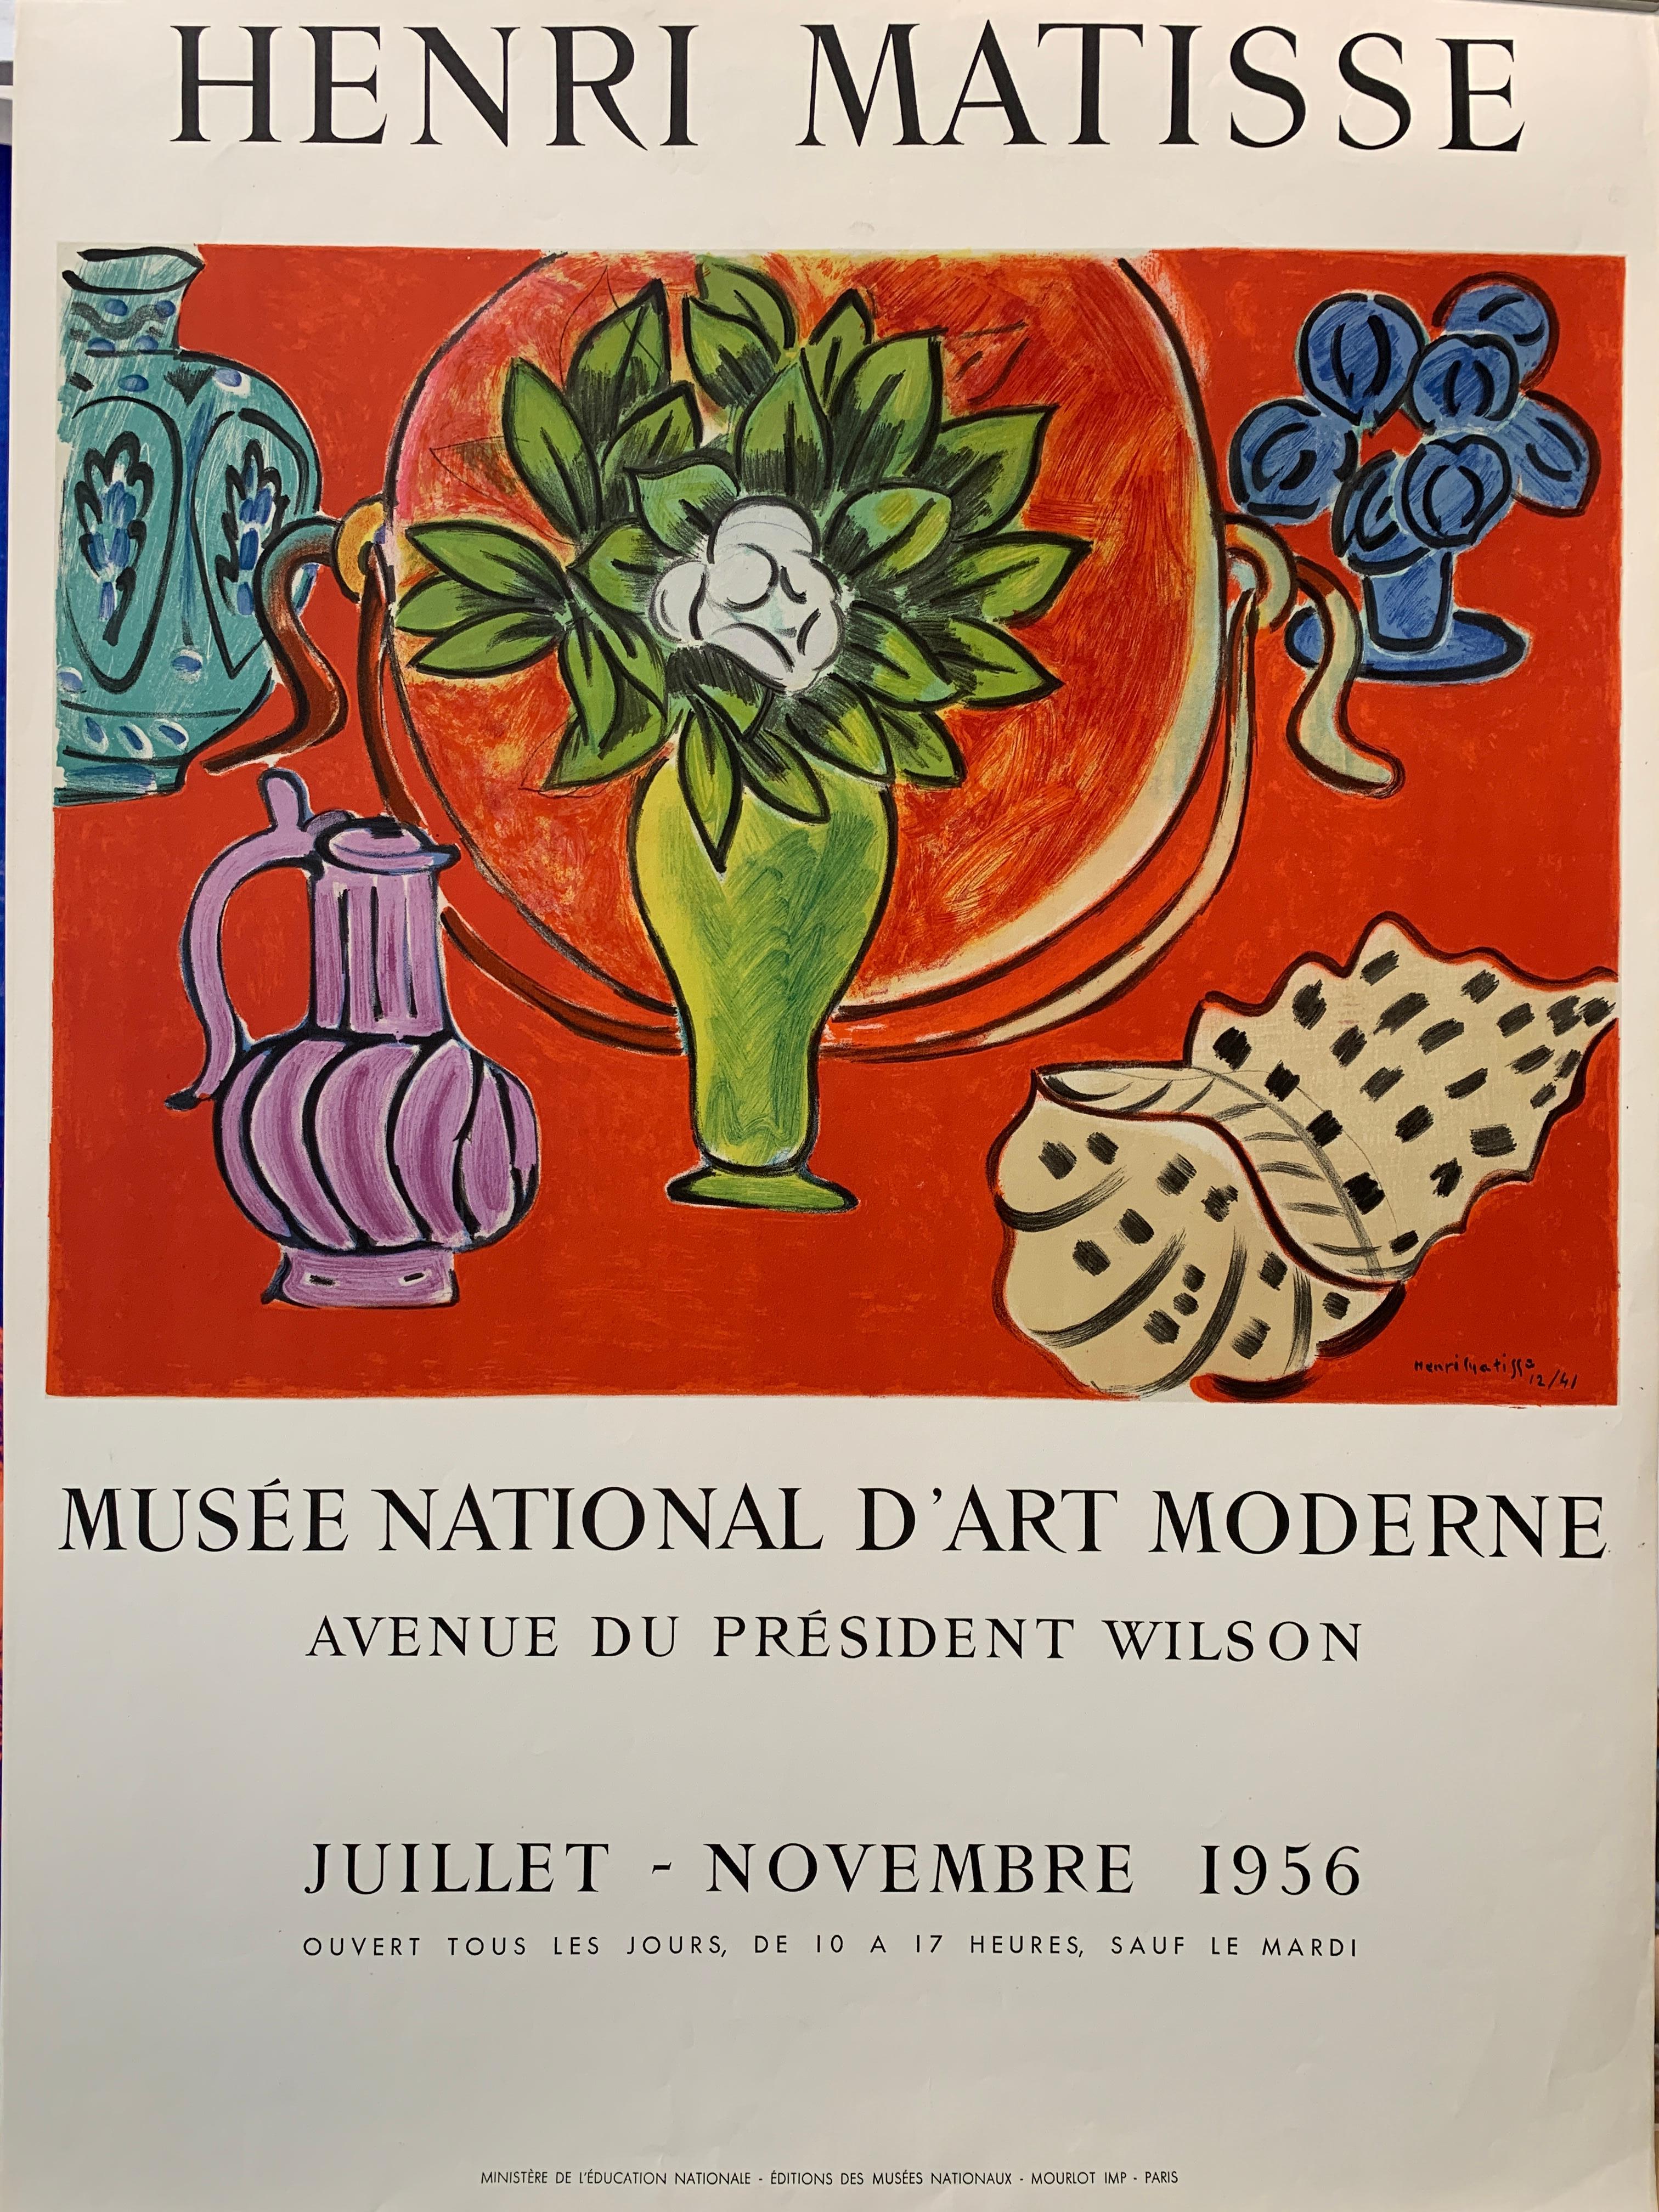 Entre 1900 et 1905, Matisse peint dans le style dit des Fauves. La plupart de ses plus belles œuvres ont été créées au cours de la décennie qui a suivi 1906. Matisse a développé un style qui mettait l'accent sur les formes aplaties et les motifs